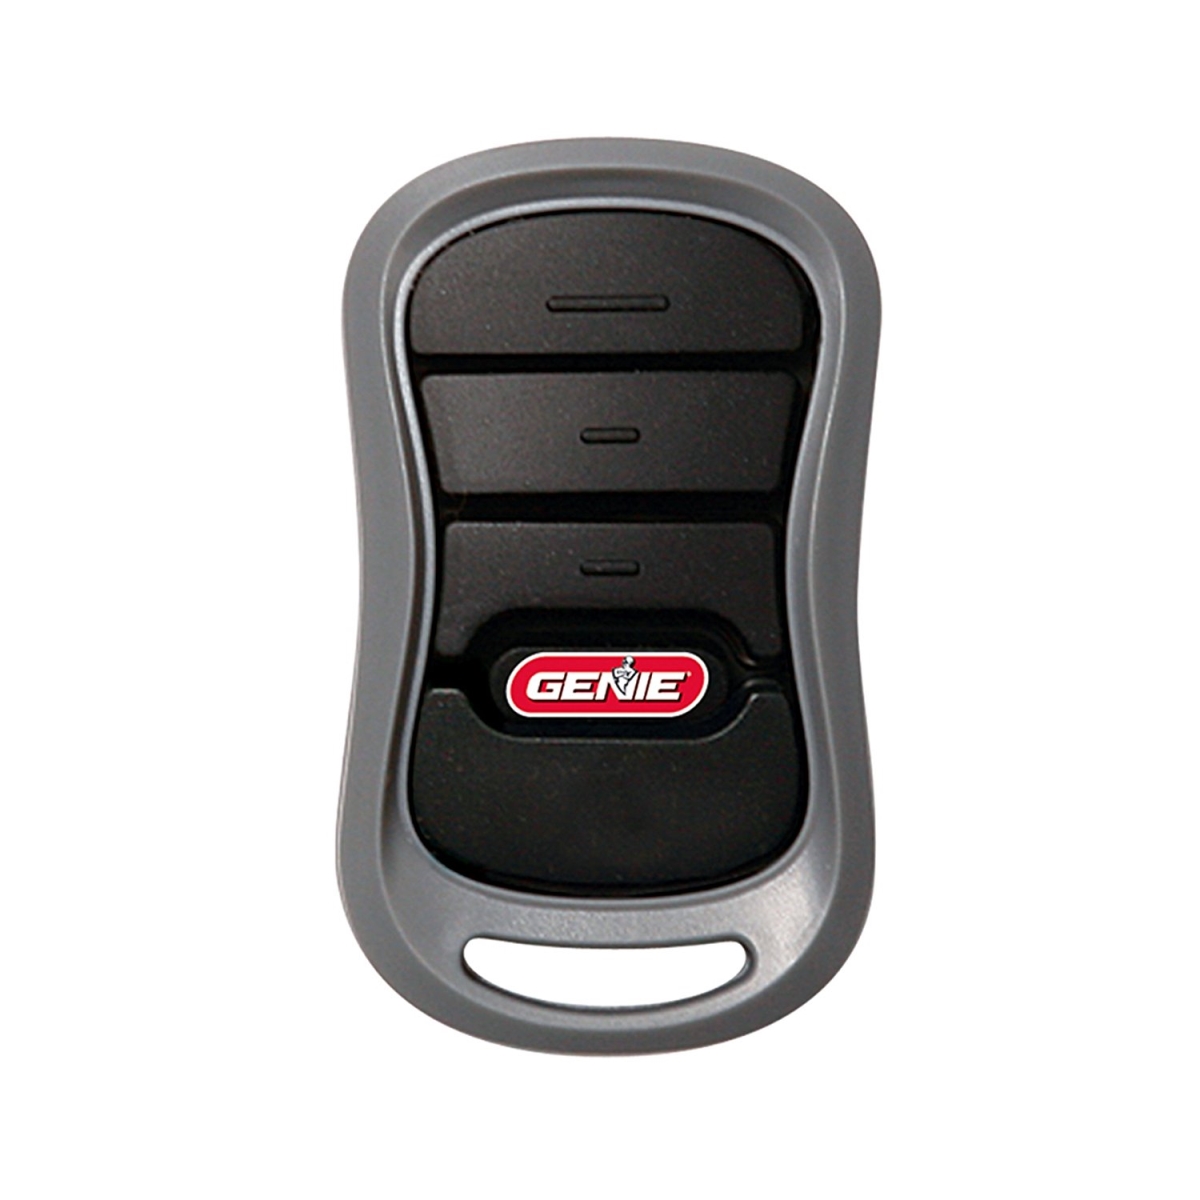 Picture of Genie 146118 Intellicode2 3-Button Remote